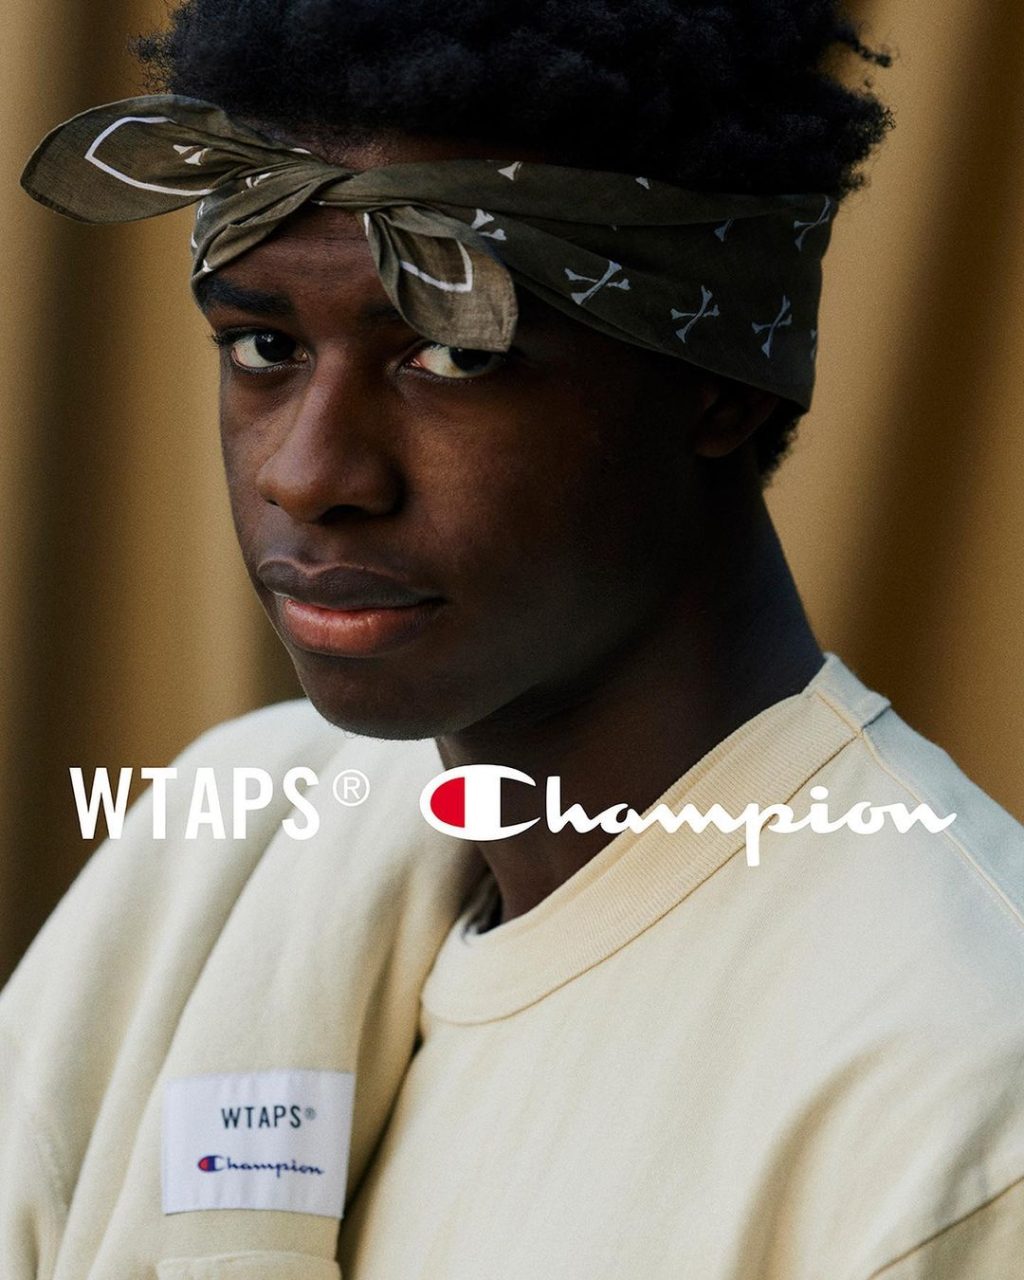 wtaps-champion-2022-collaboration-release-20220115